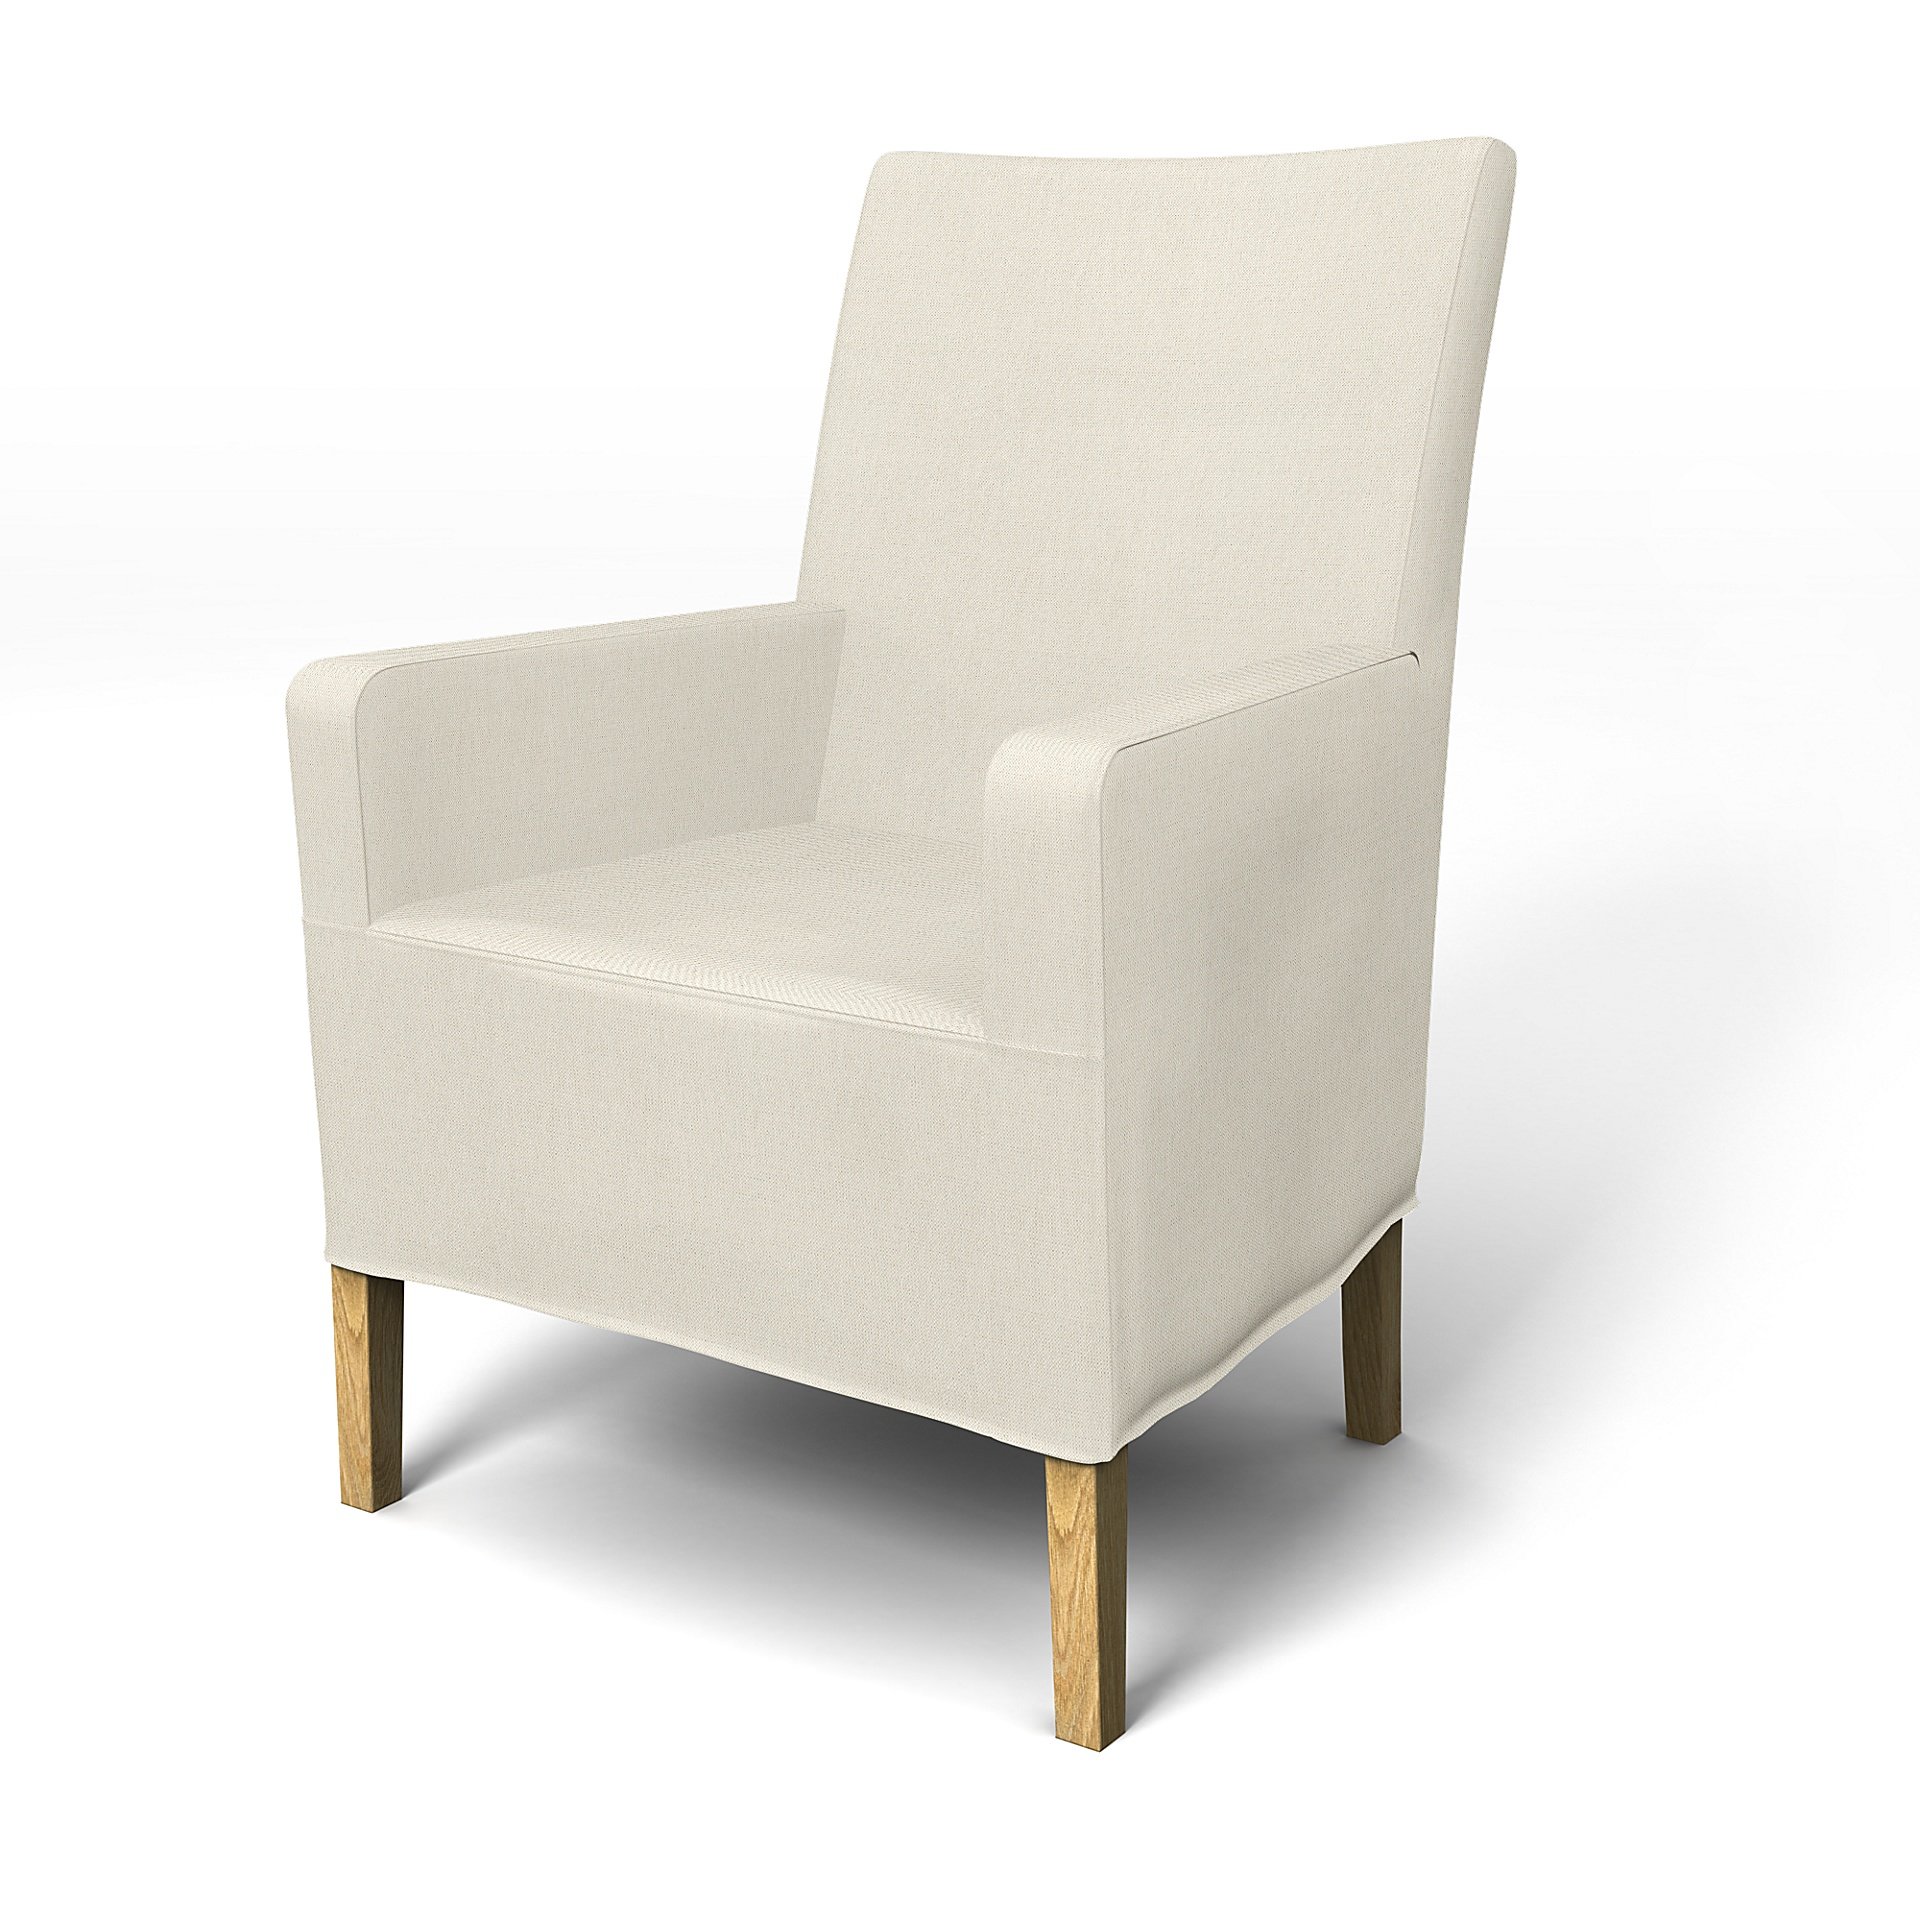 IKEA - Henriksdal, Chair cover w/ armrest, medium length skirt, Unbleached, Linen - Bemz